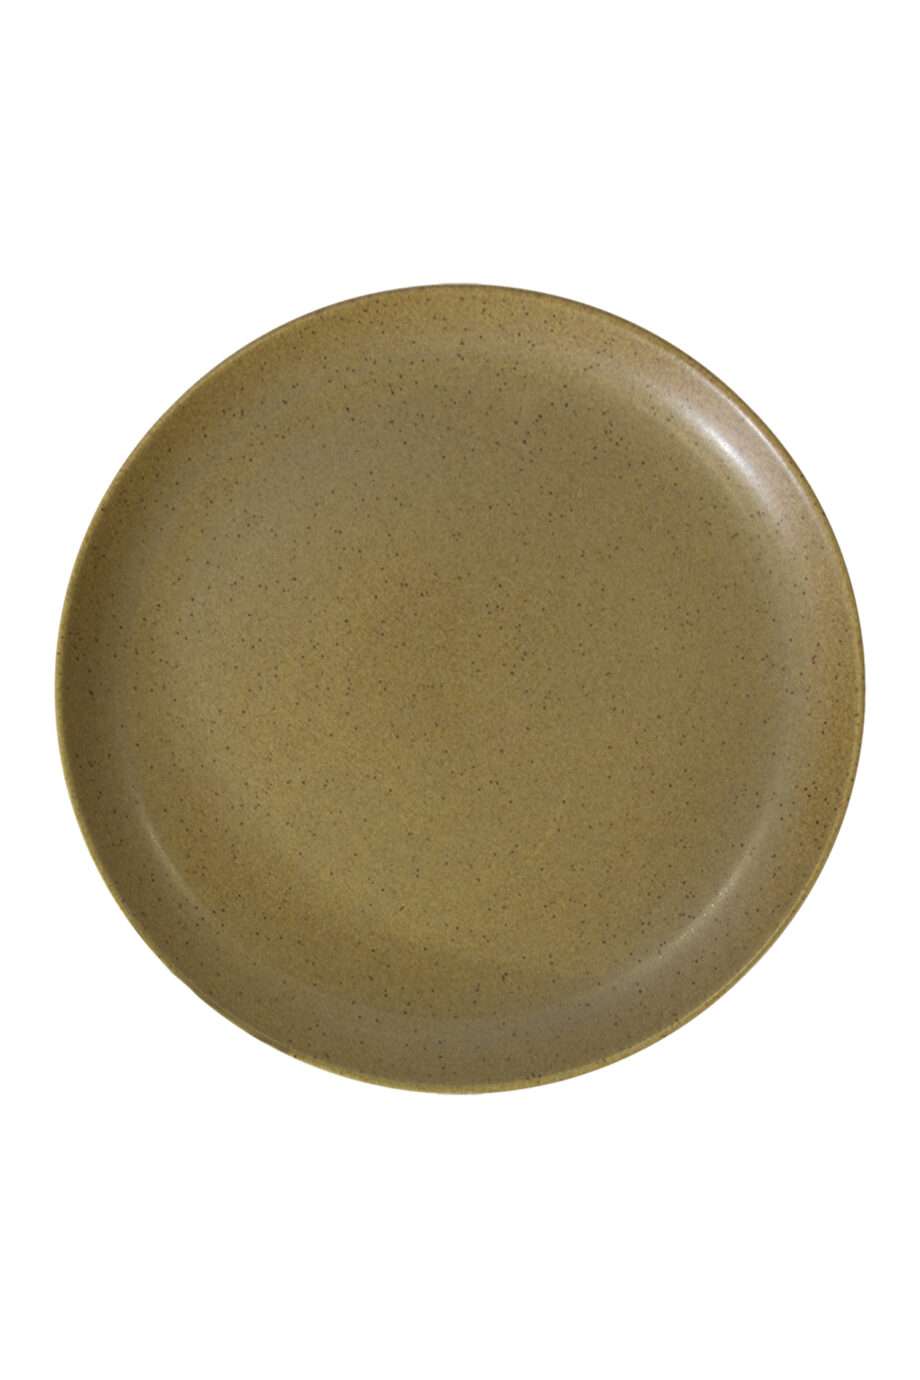 dessert plate mustard mat ceramic medium